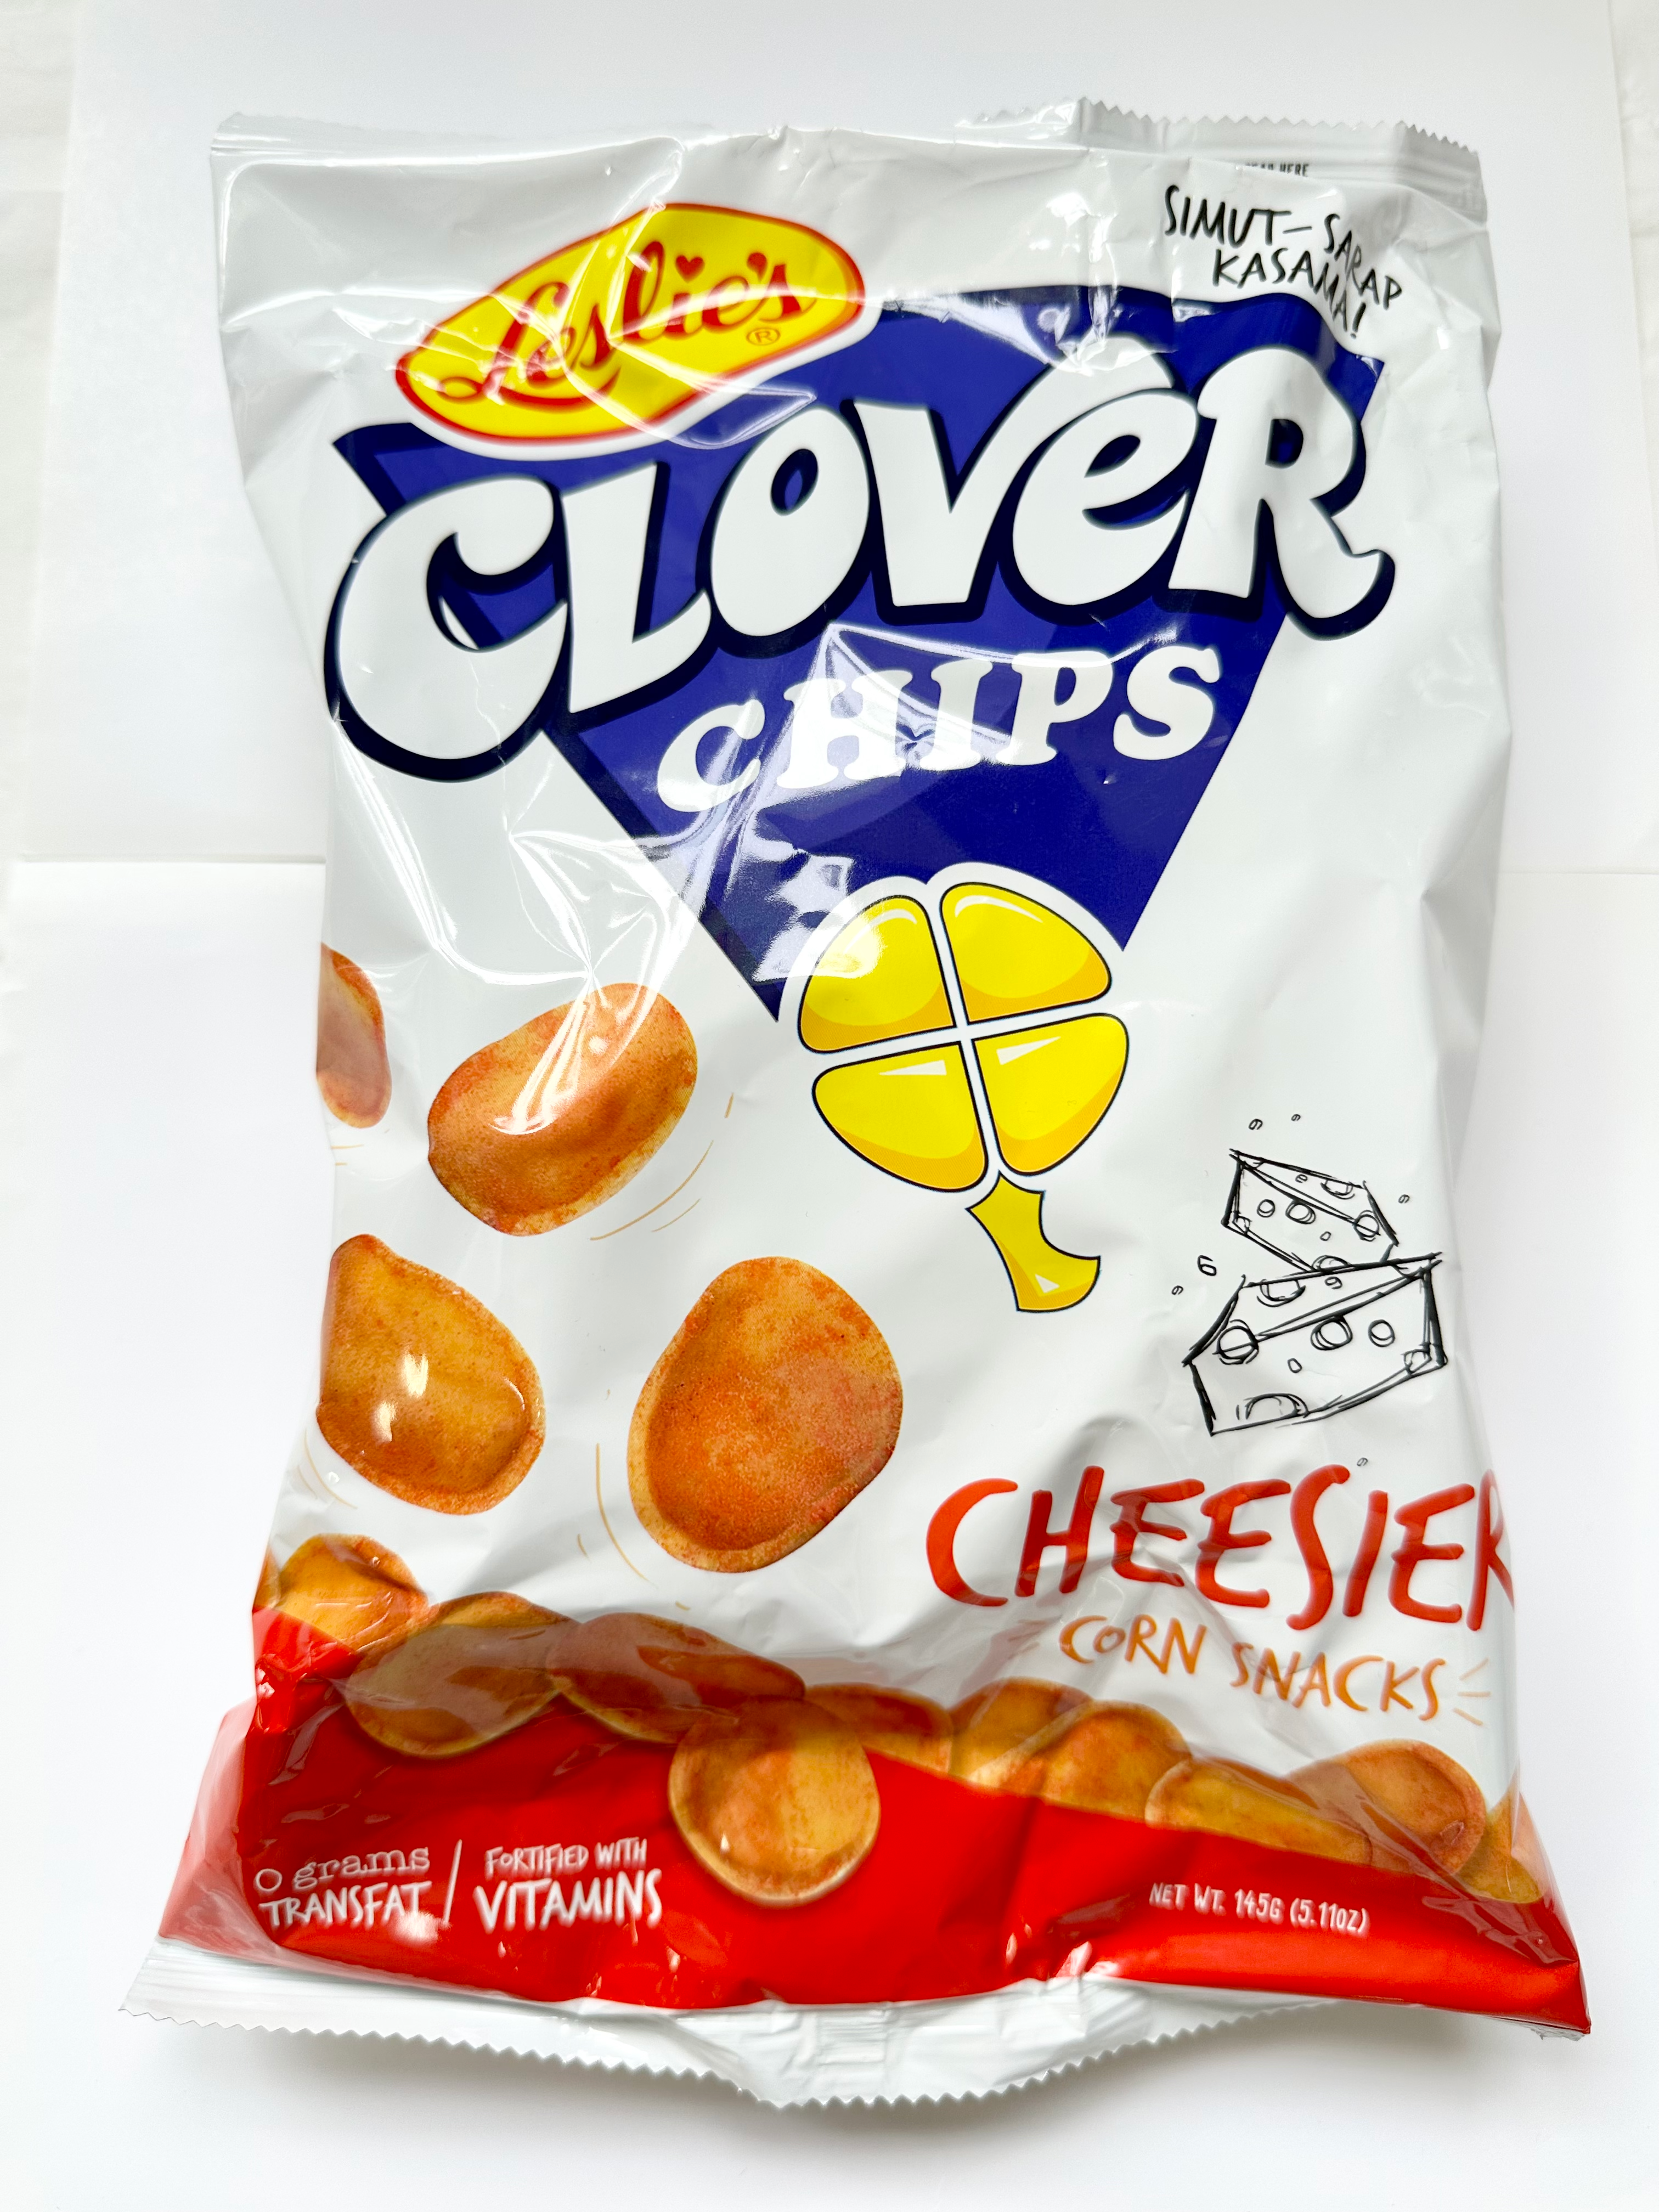 clover chips logo